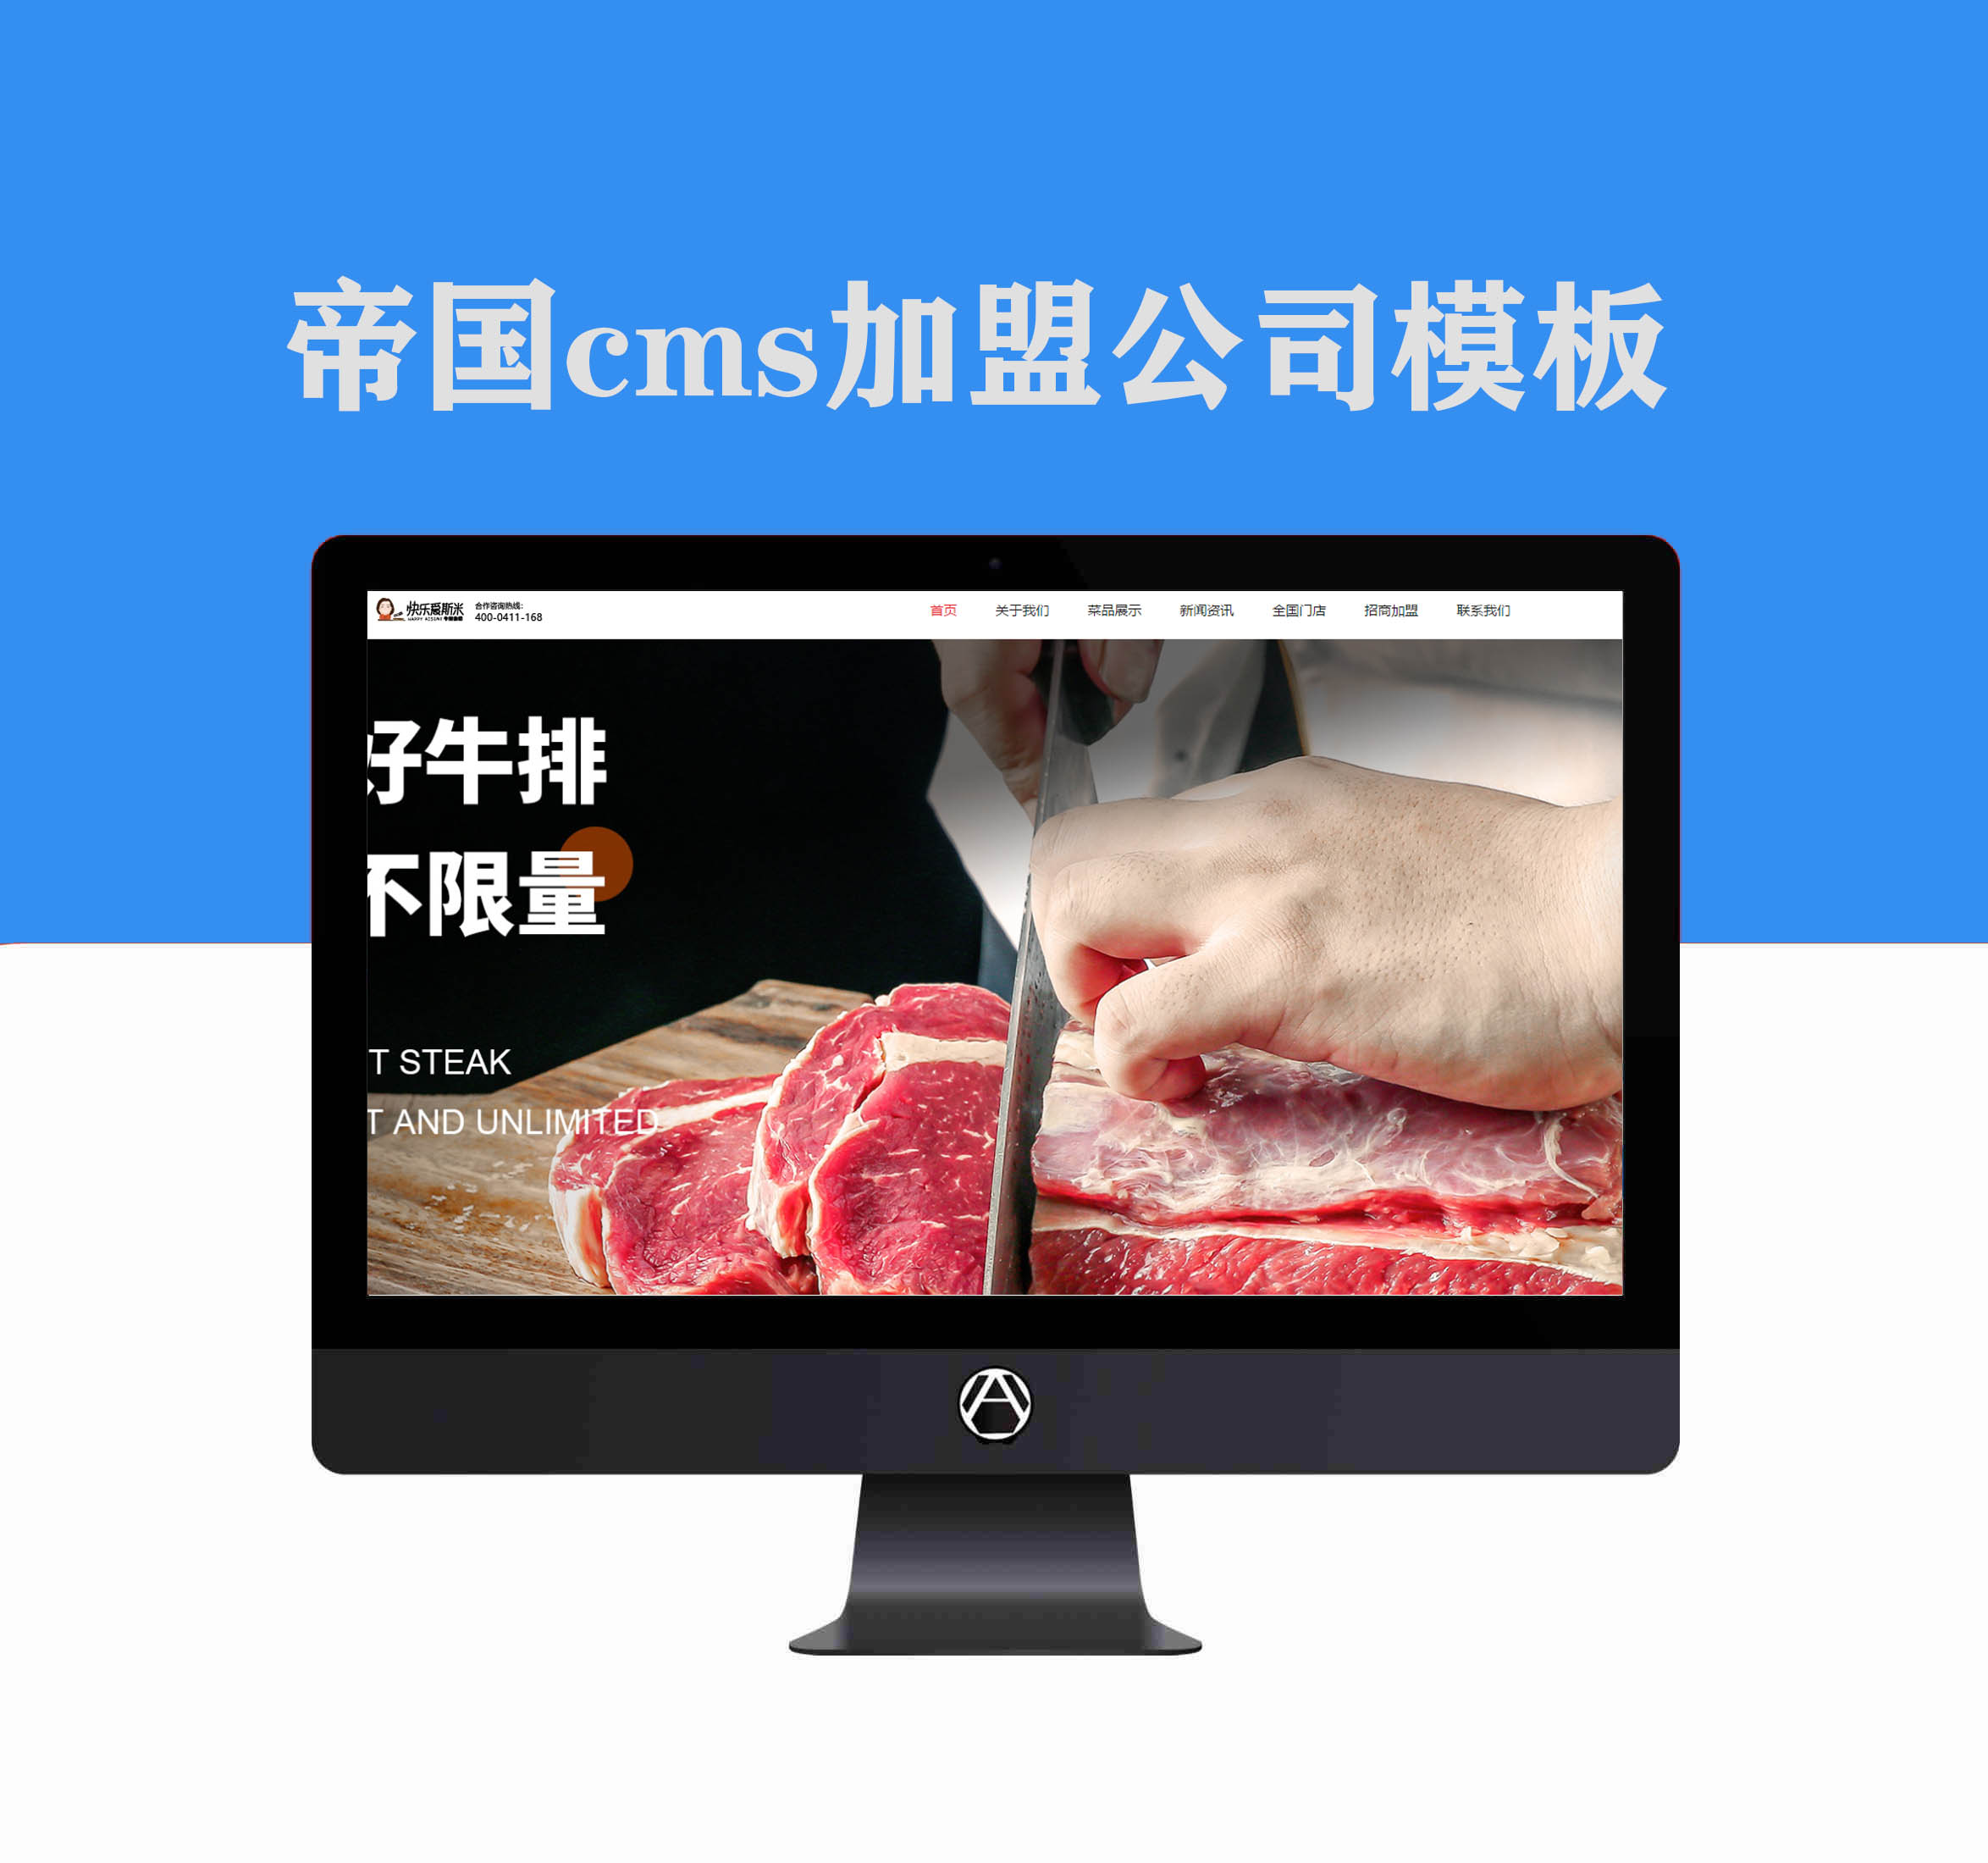 帝国cms7.5版本适用于加盟企业公司网站模板